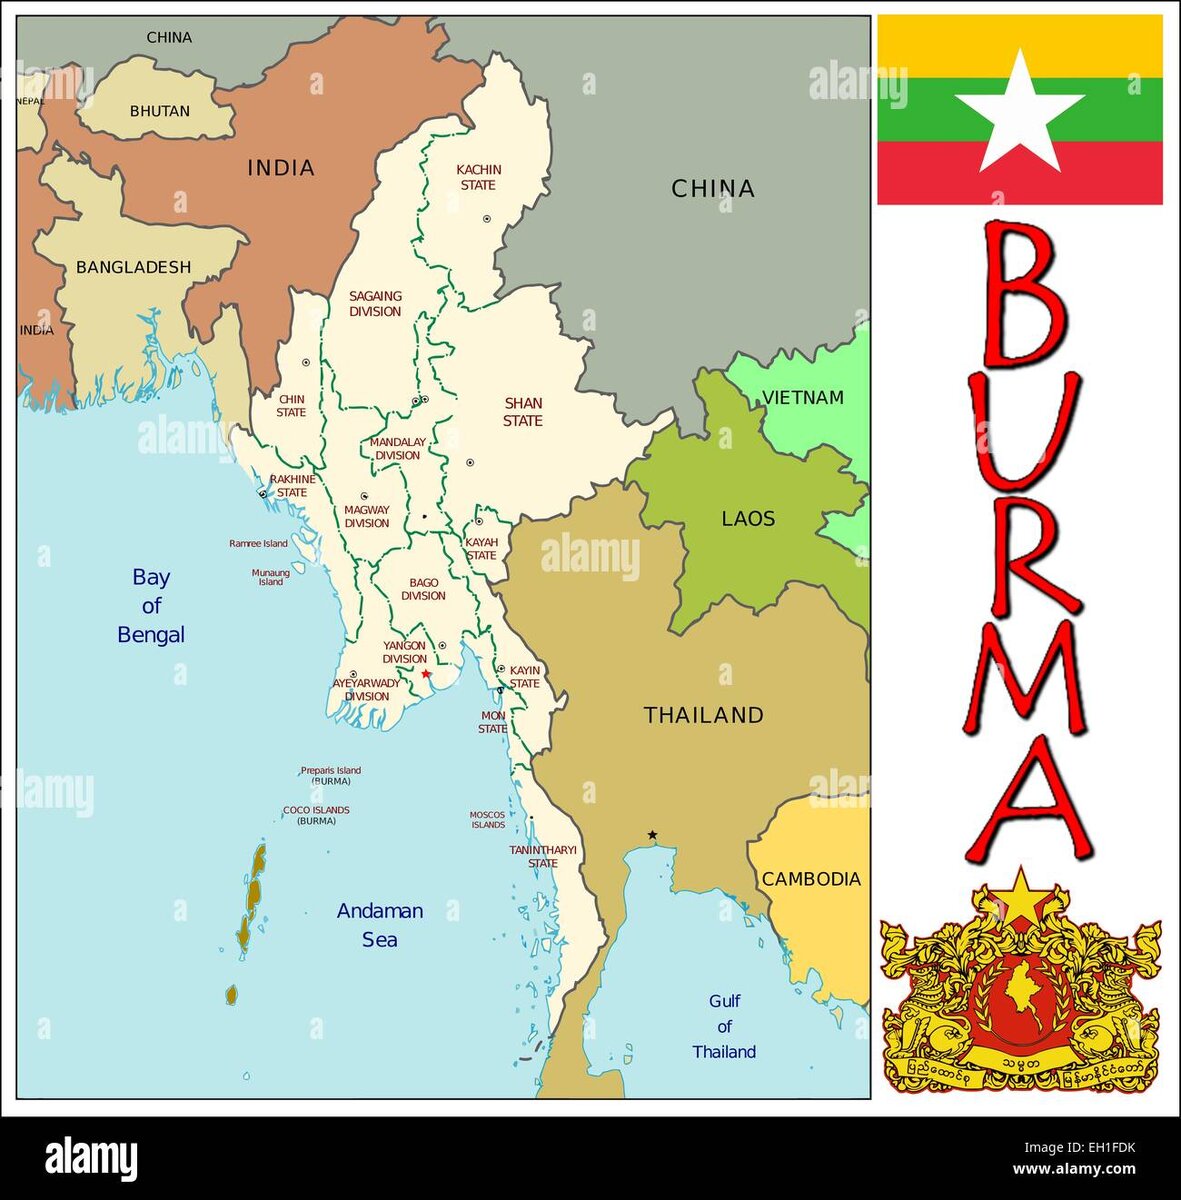 административное деление Мьянмы/Бирмы